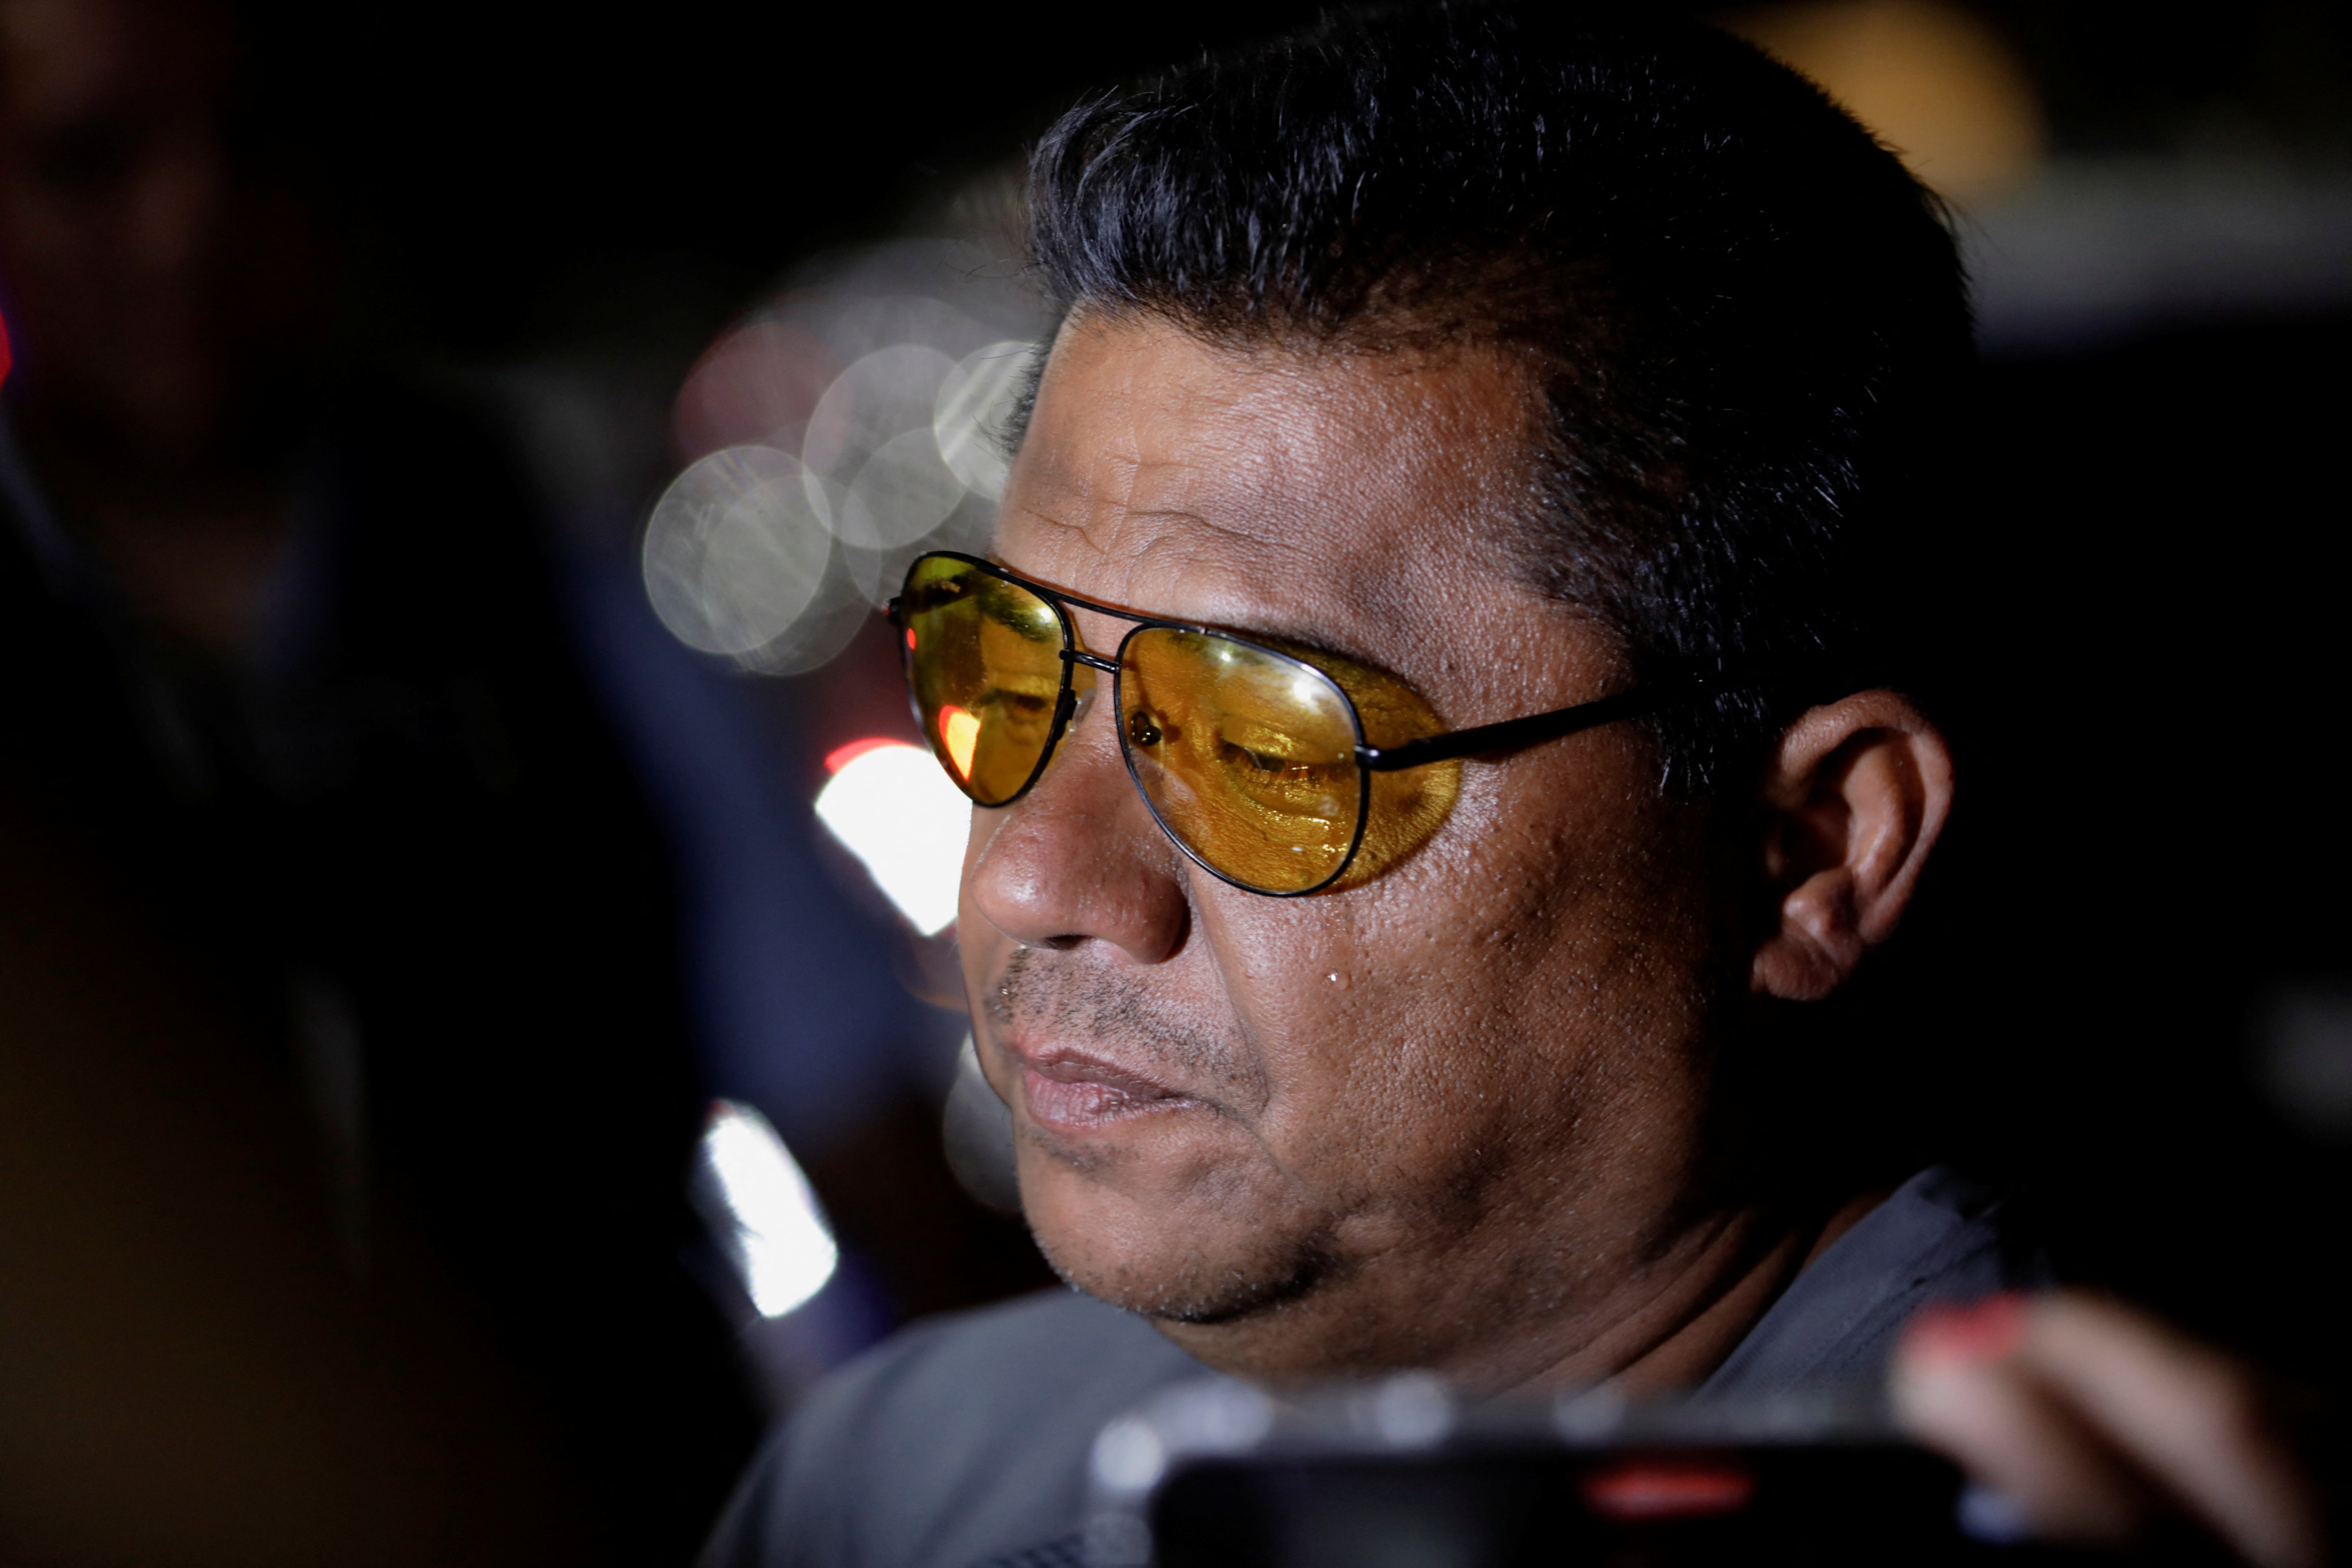 Mario Escobar aseguró que no se rendirán en la búsqueda de la verdad.

Foto: REUTERS/Daniel Becerril